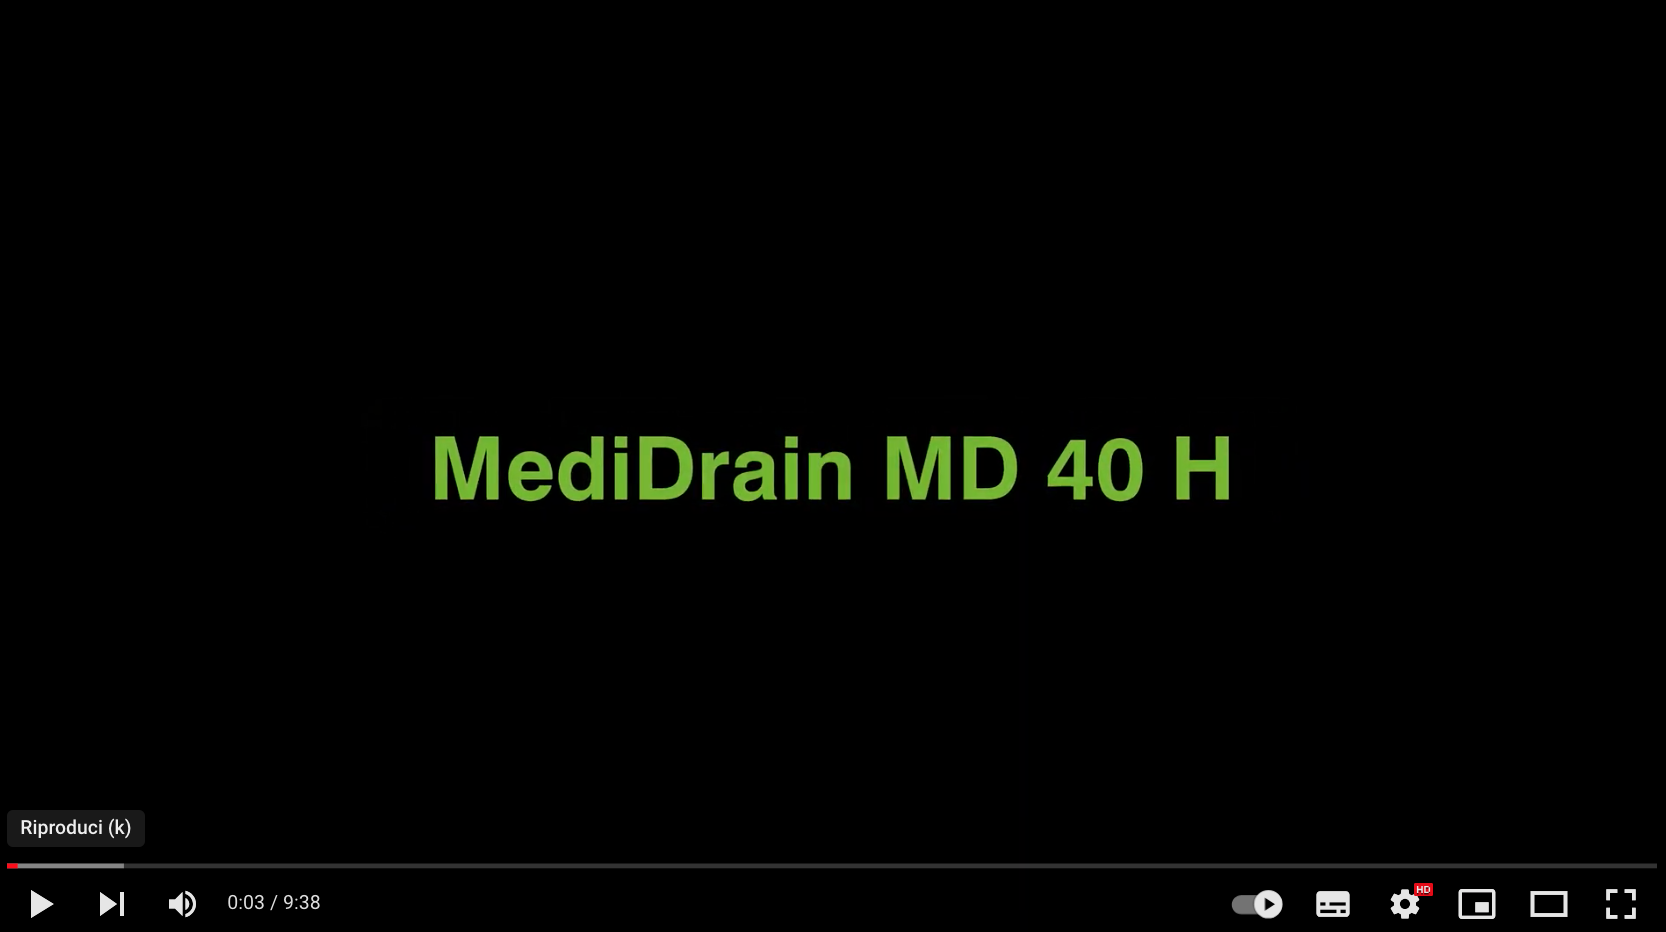 Il pannello drenante MediDrain si evolve in MD 40 H - Harpo verdepensile